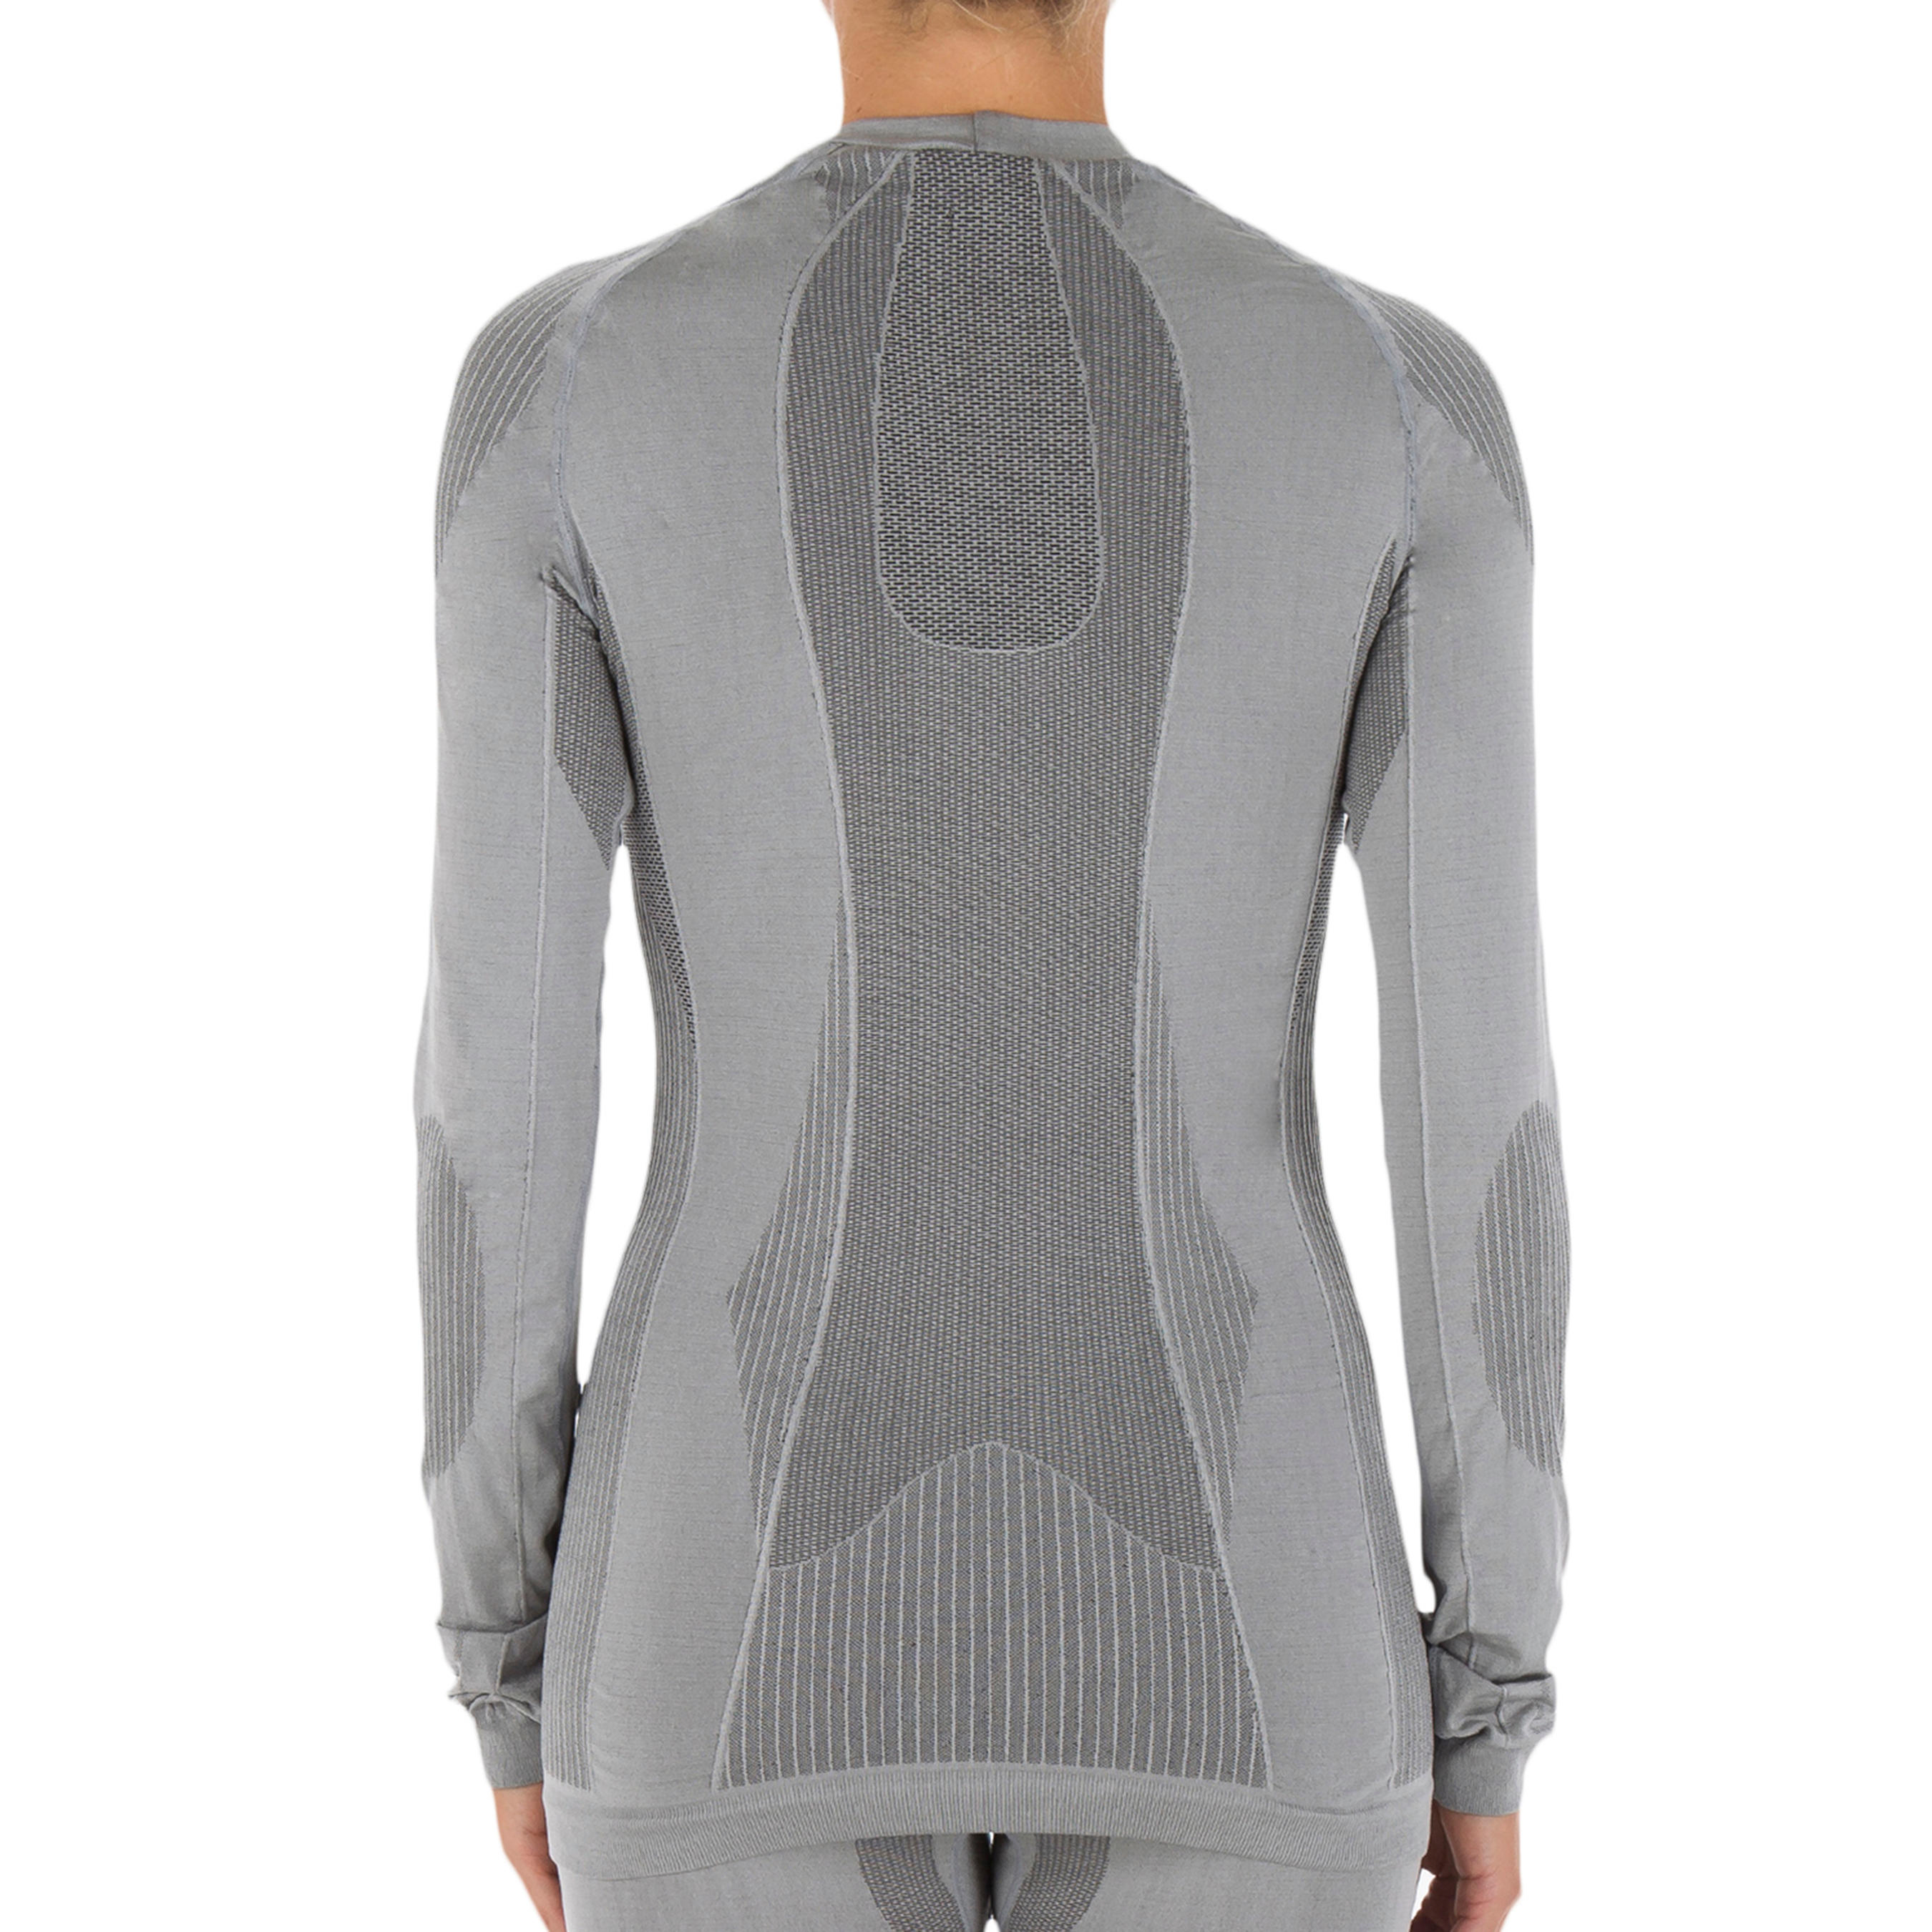 Women's 900 Merino wool seamless thermal base layer ski top - grey/pink  WEDZE